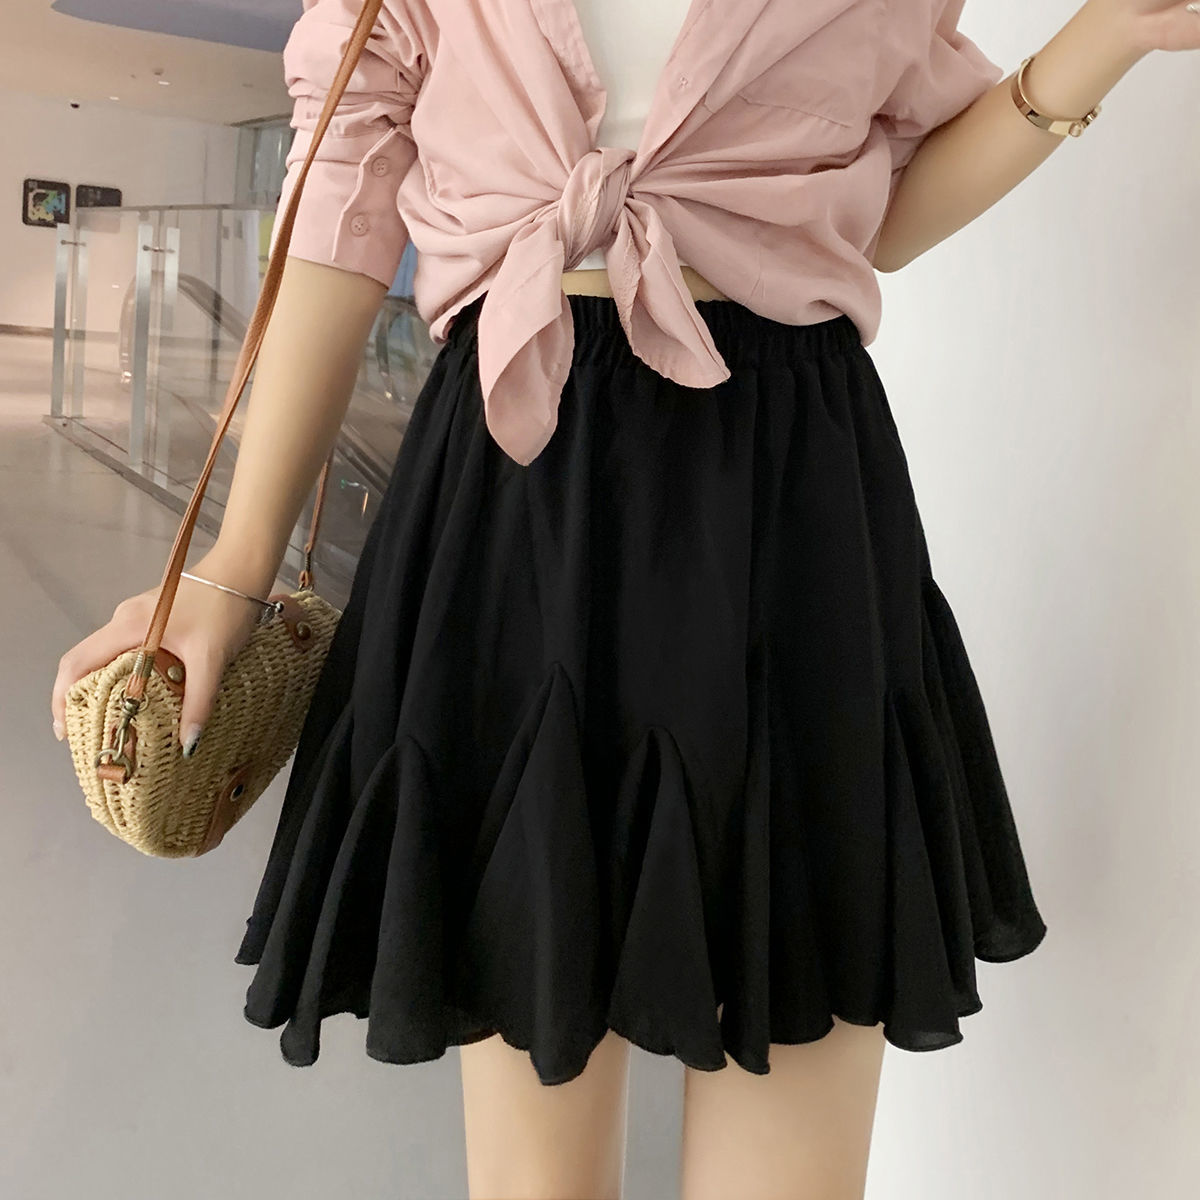 Chiffon pleated skirt large cake fishtail short skirt high waist A-line black and white skirt for women summer